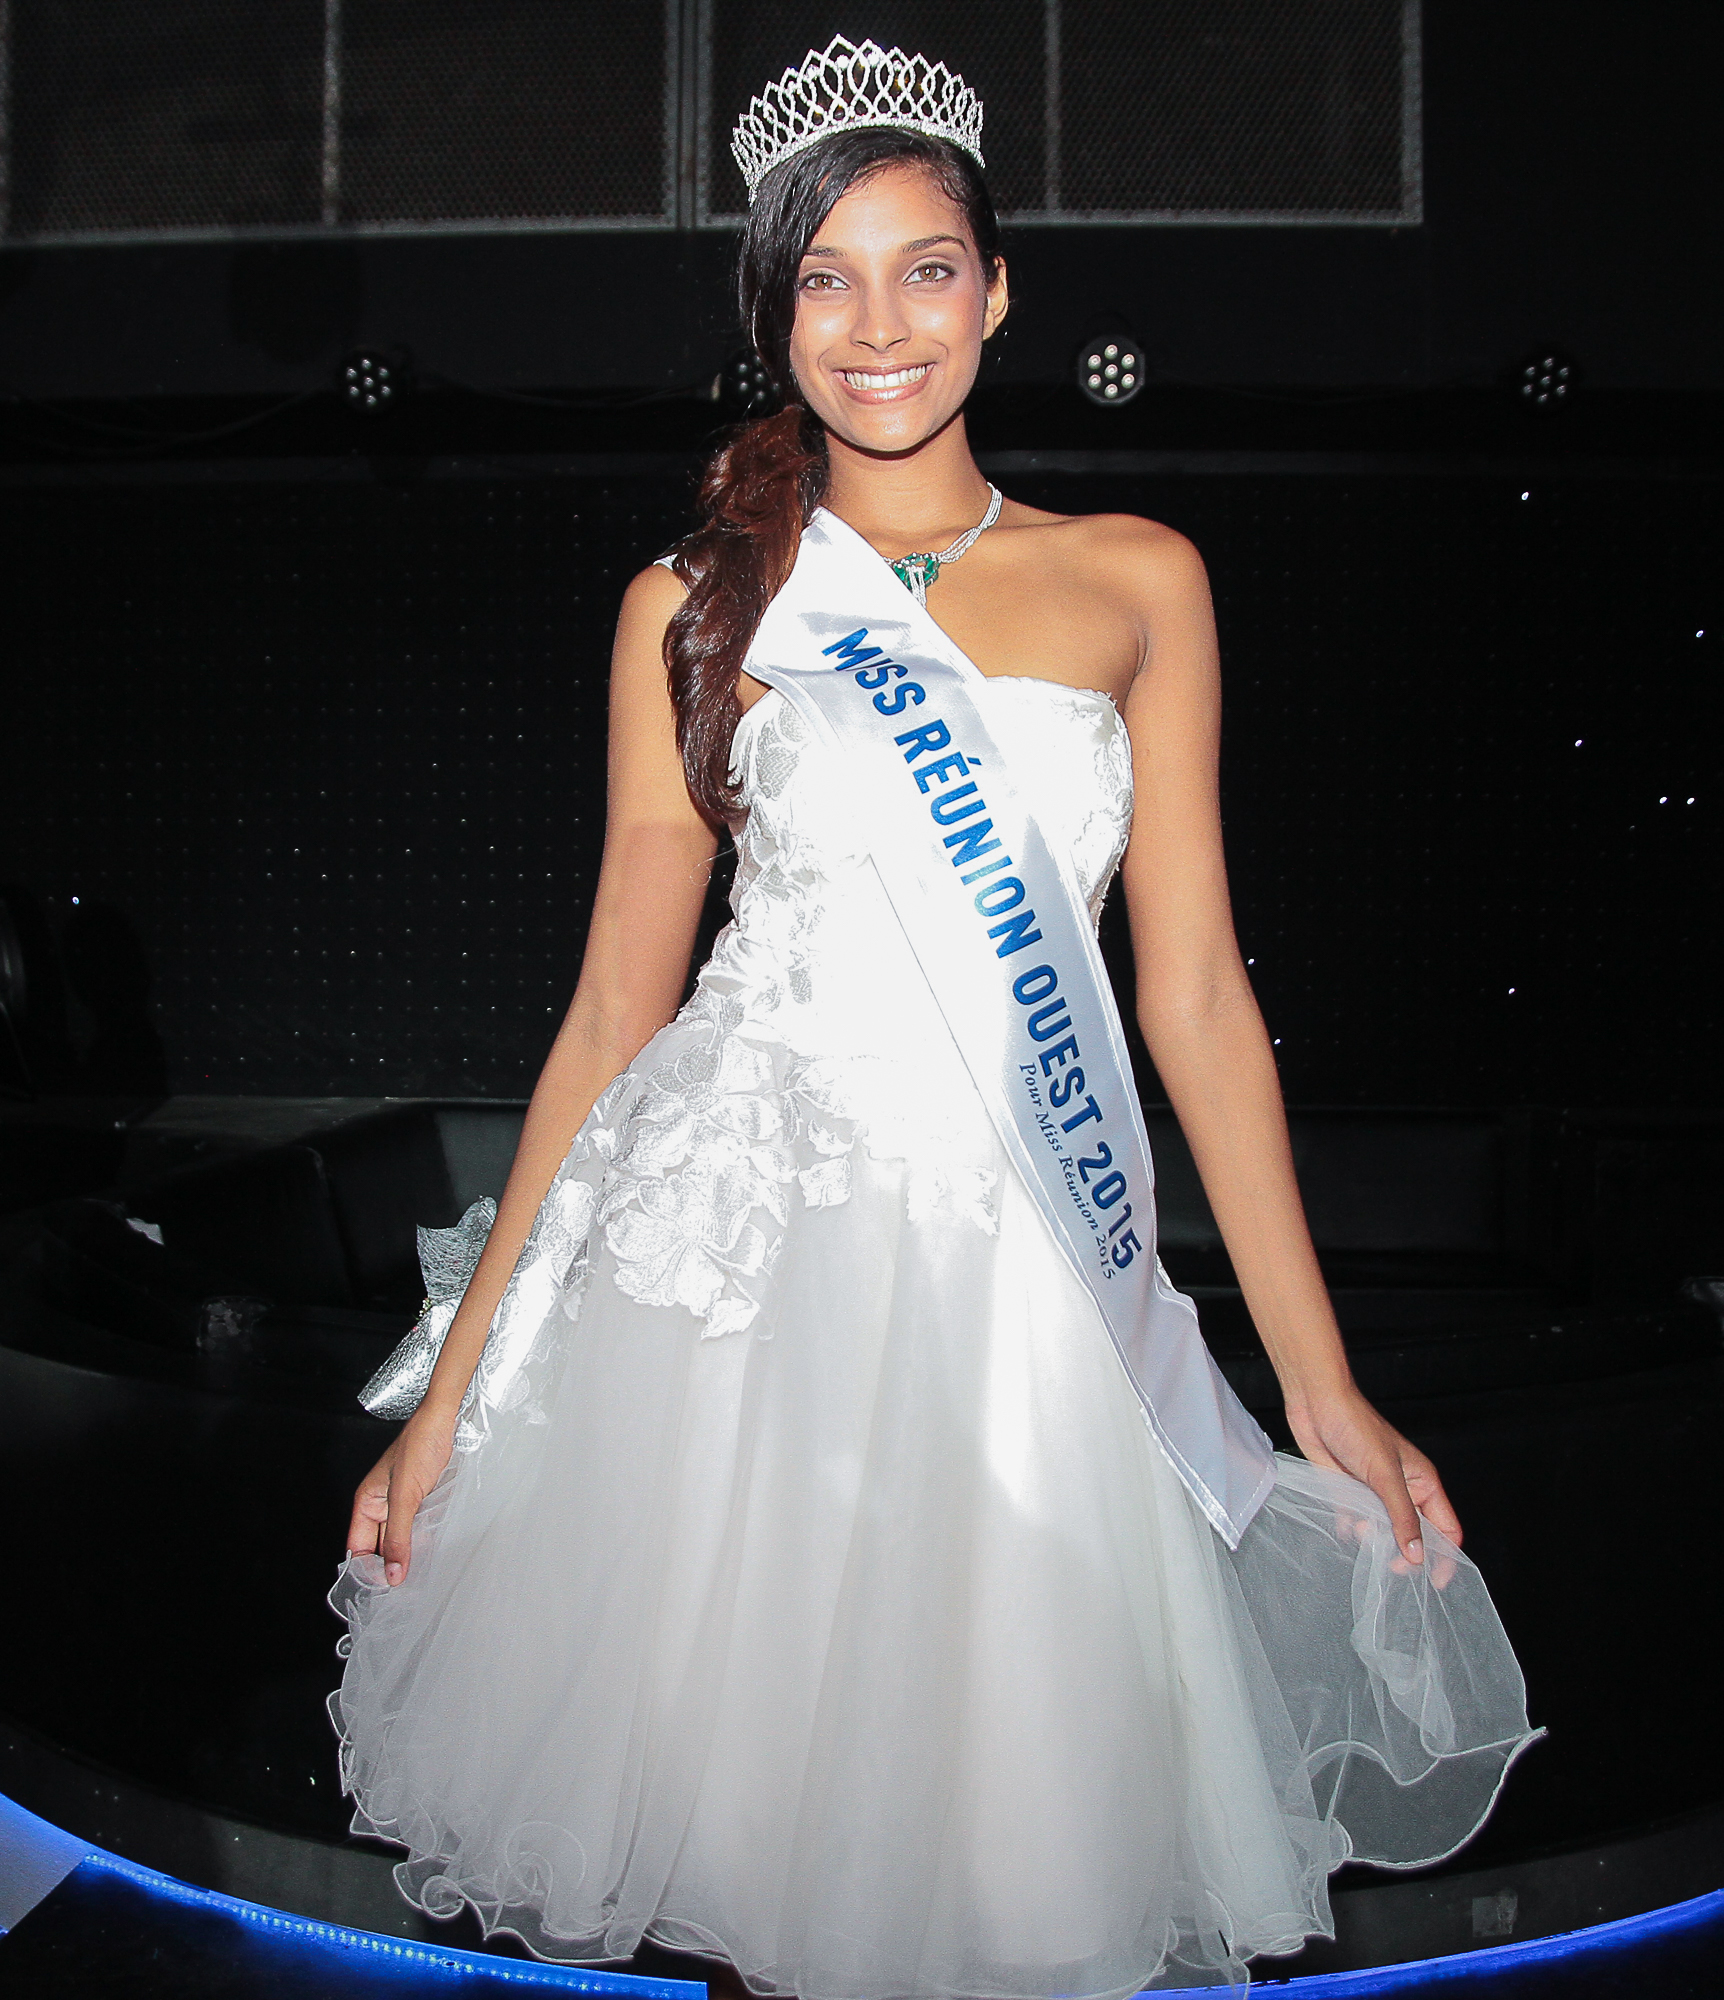 Farida est qualifiée pour Miss Réunion 2015